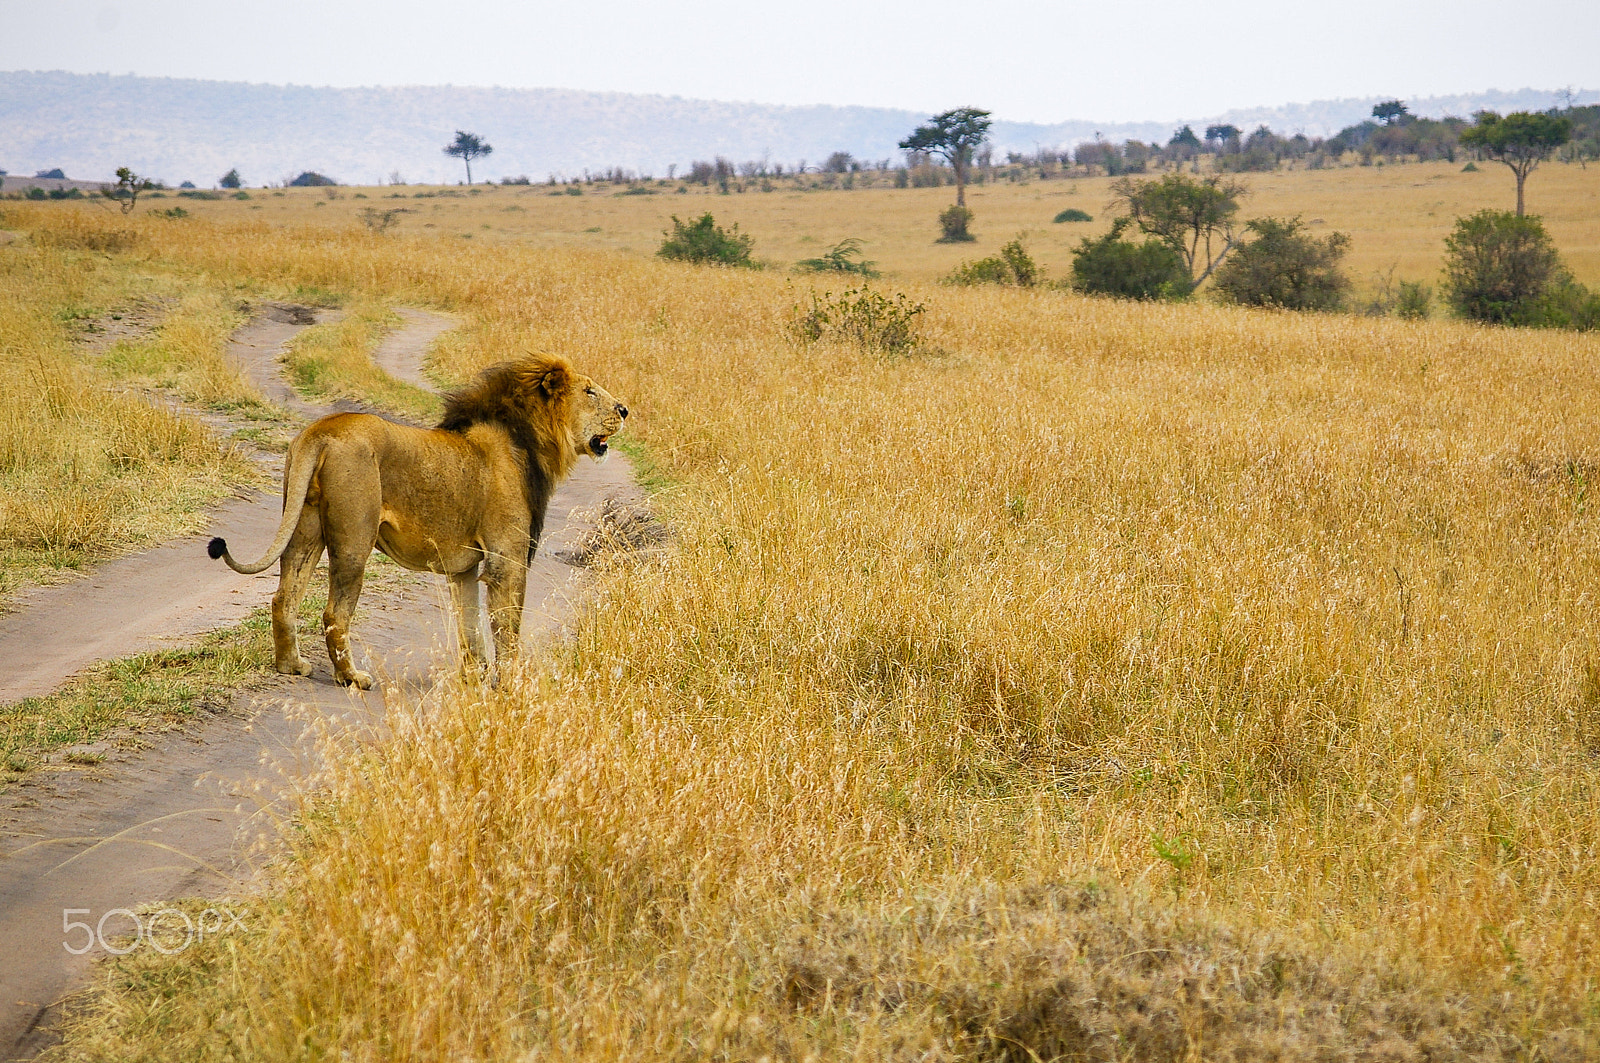 Pentax K100D + Pentax smc DA 50-200mm F4-5.6 ED sample photo. A male lion in kenya's maasai mara photography